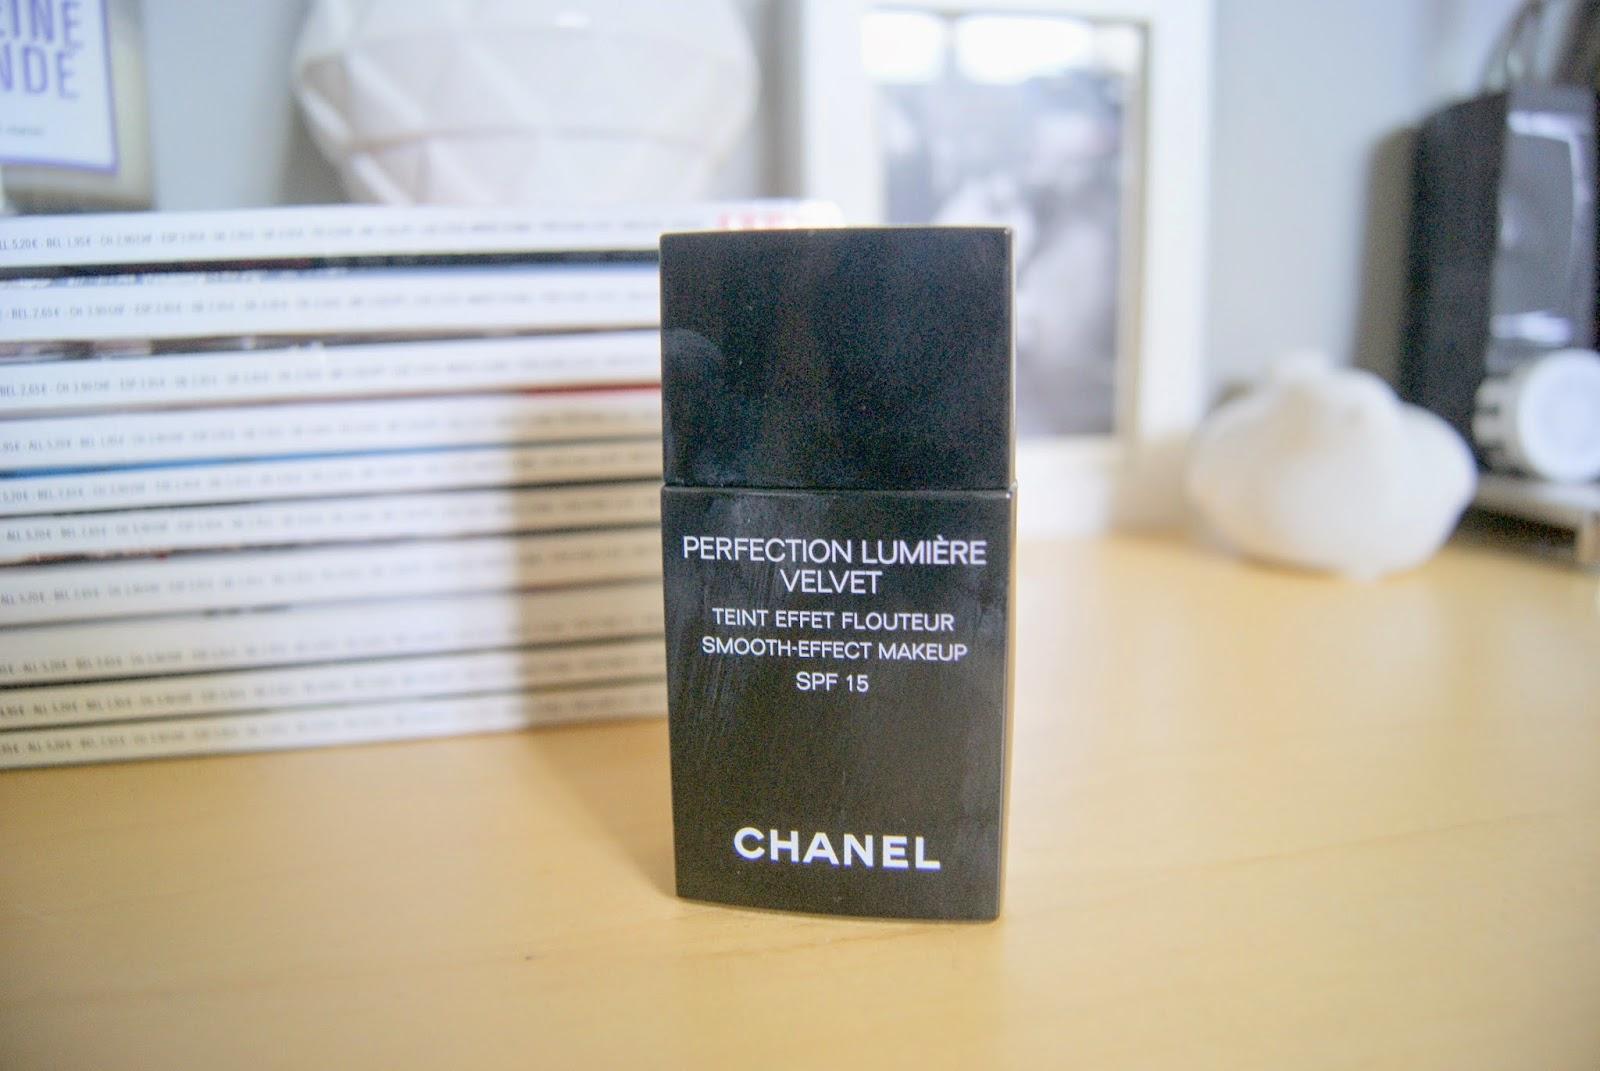 Le fond de teint miraculeux : Perfection Lumière Velvet de Chanel